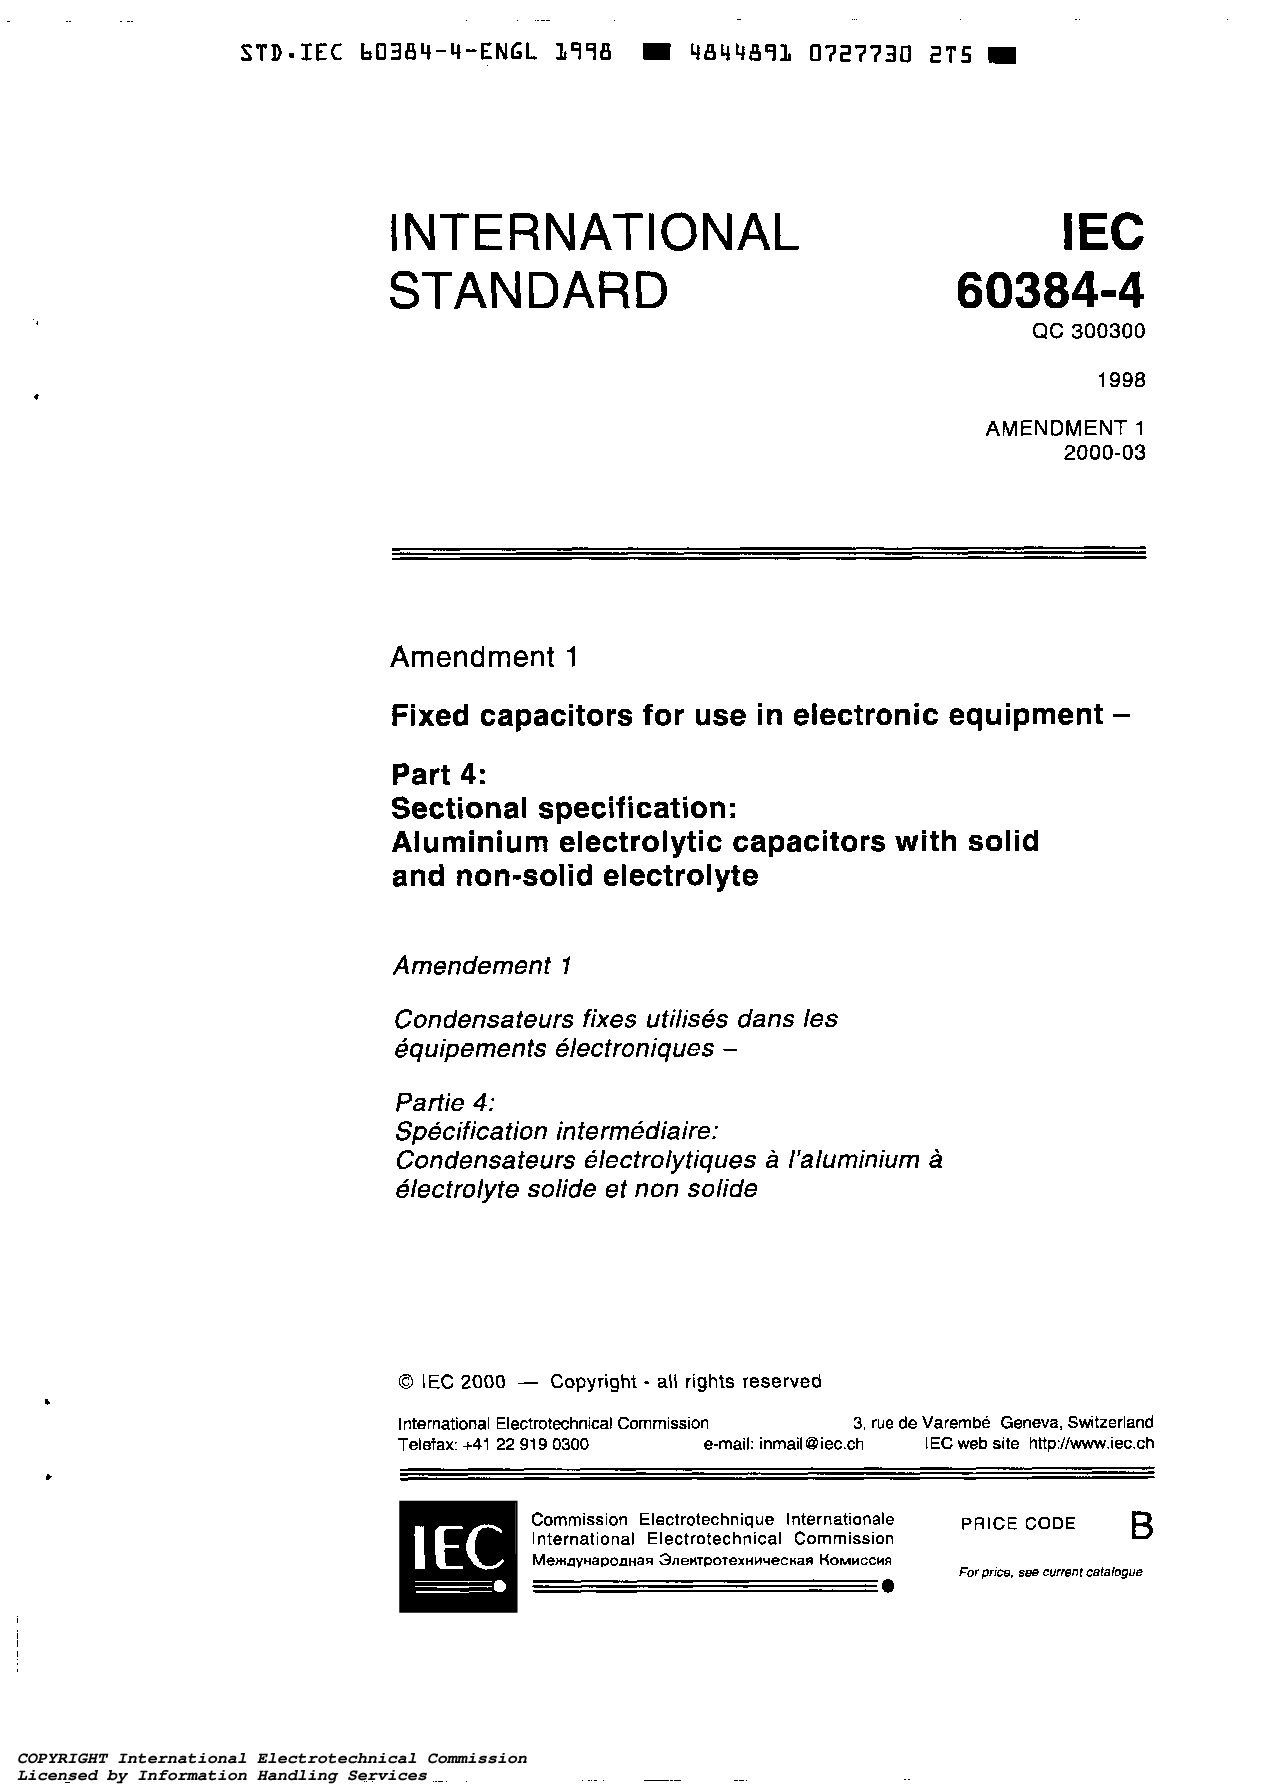 IEC 60384-4:1998